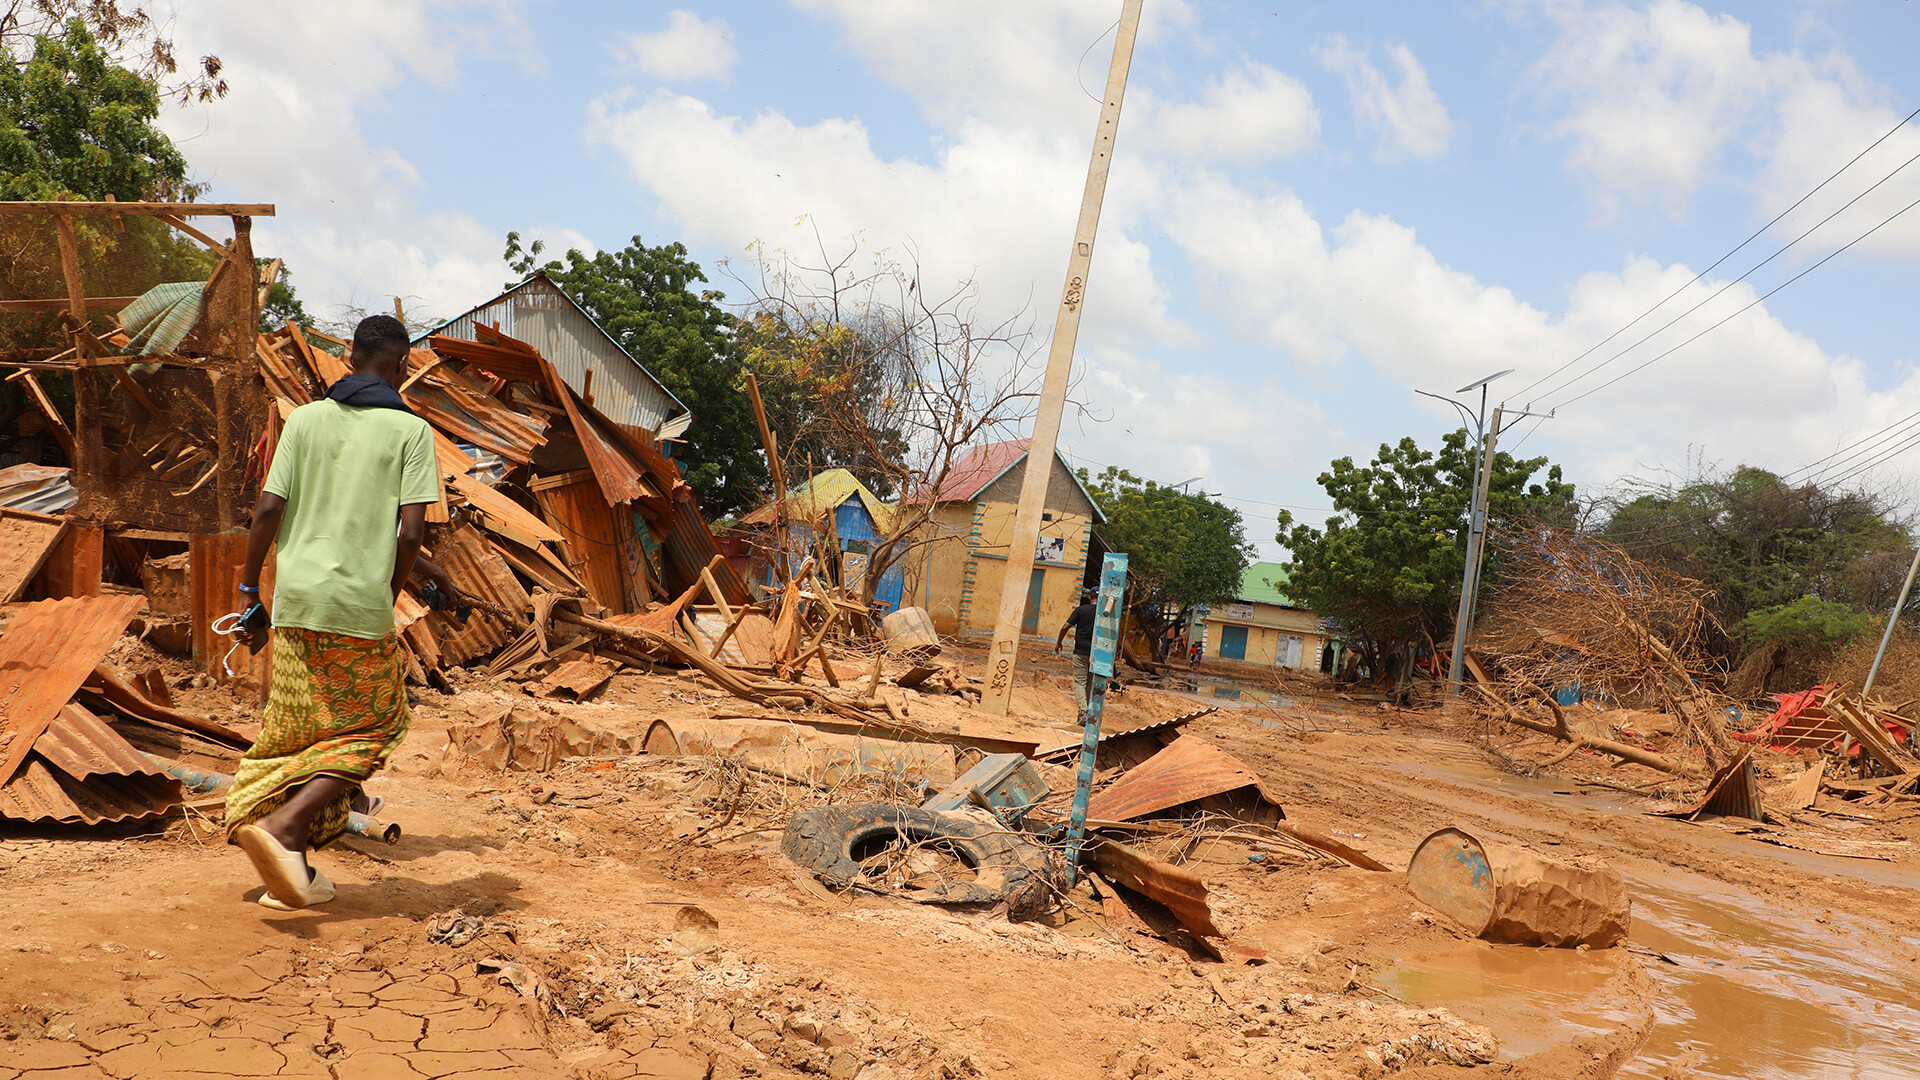 In Somalia steht ein Mann vor den Überresten seines Zuhauses, dass von starken Überschwemmungen zerstört wurde.